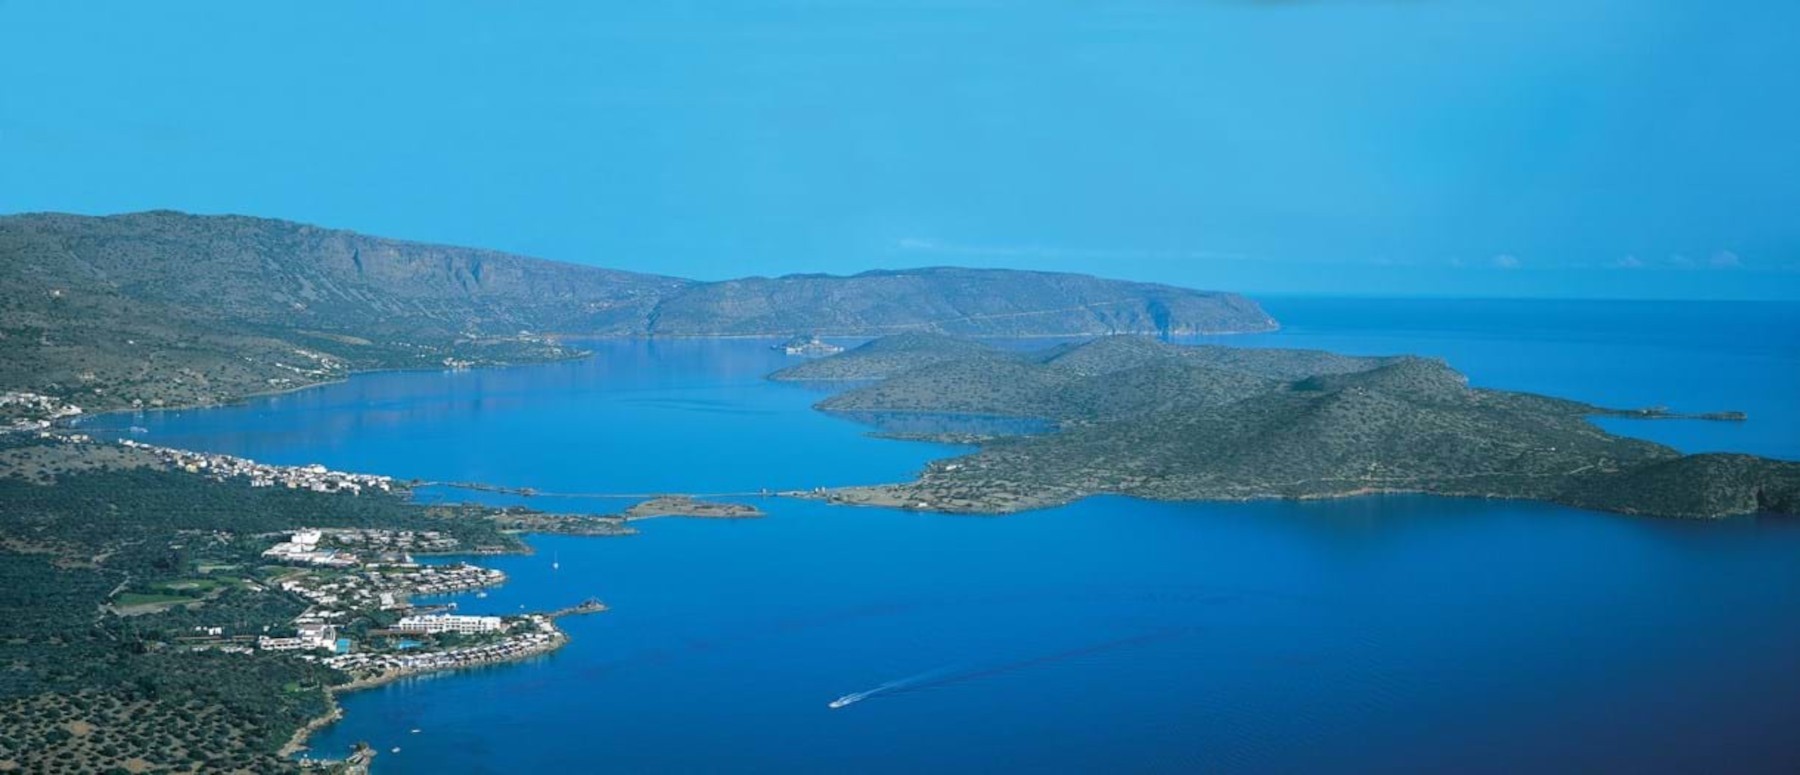 Crete Elounda - Aerial view